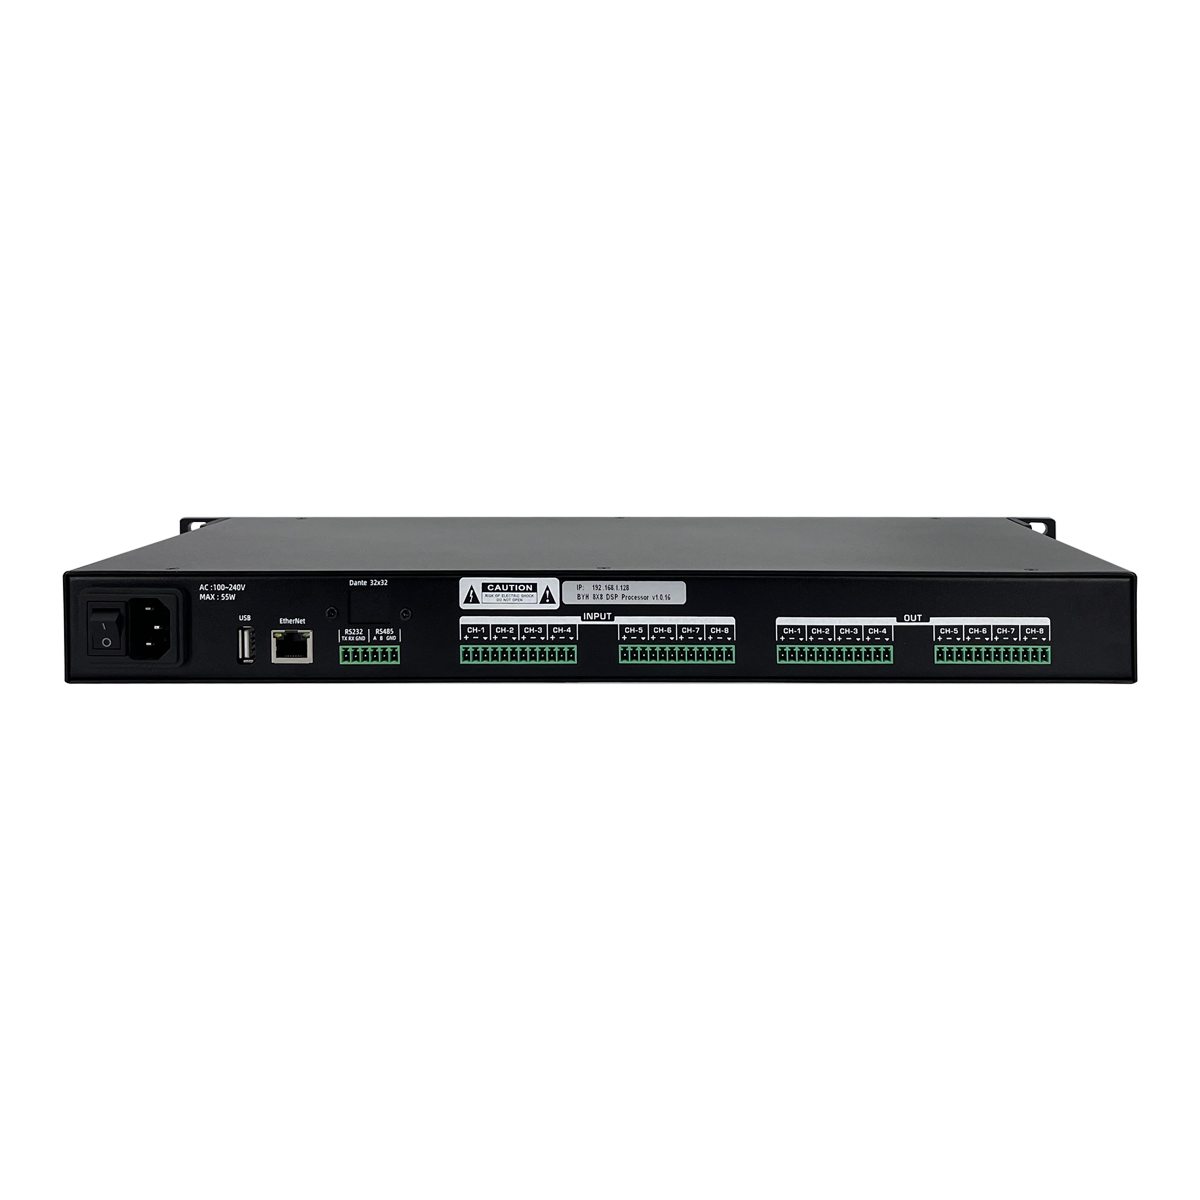 DT4008 V2.0音频处理器